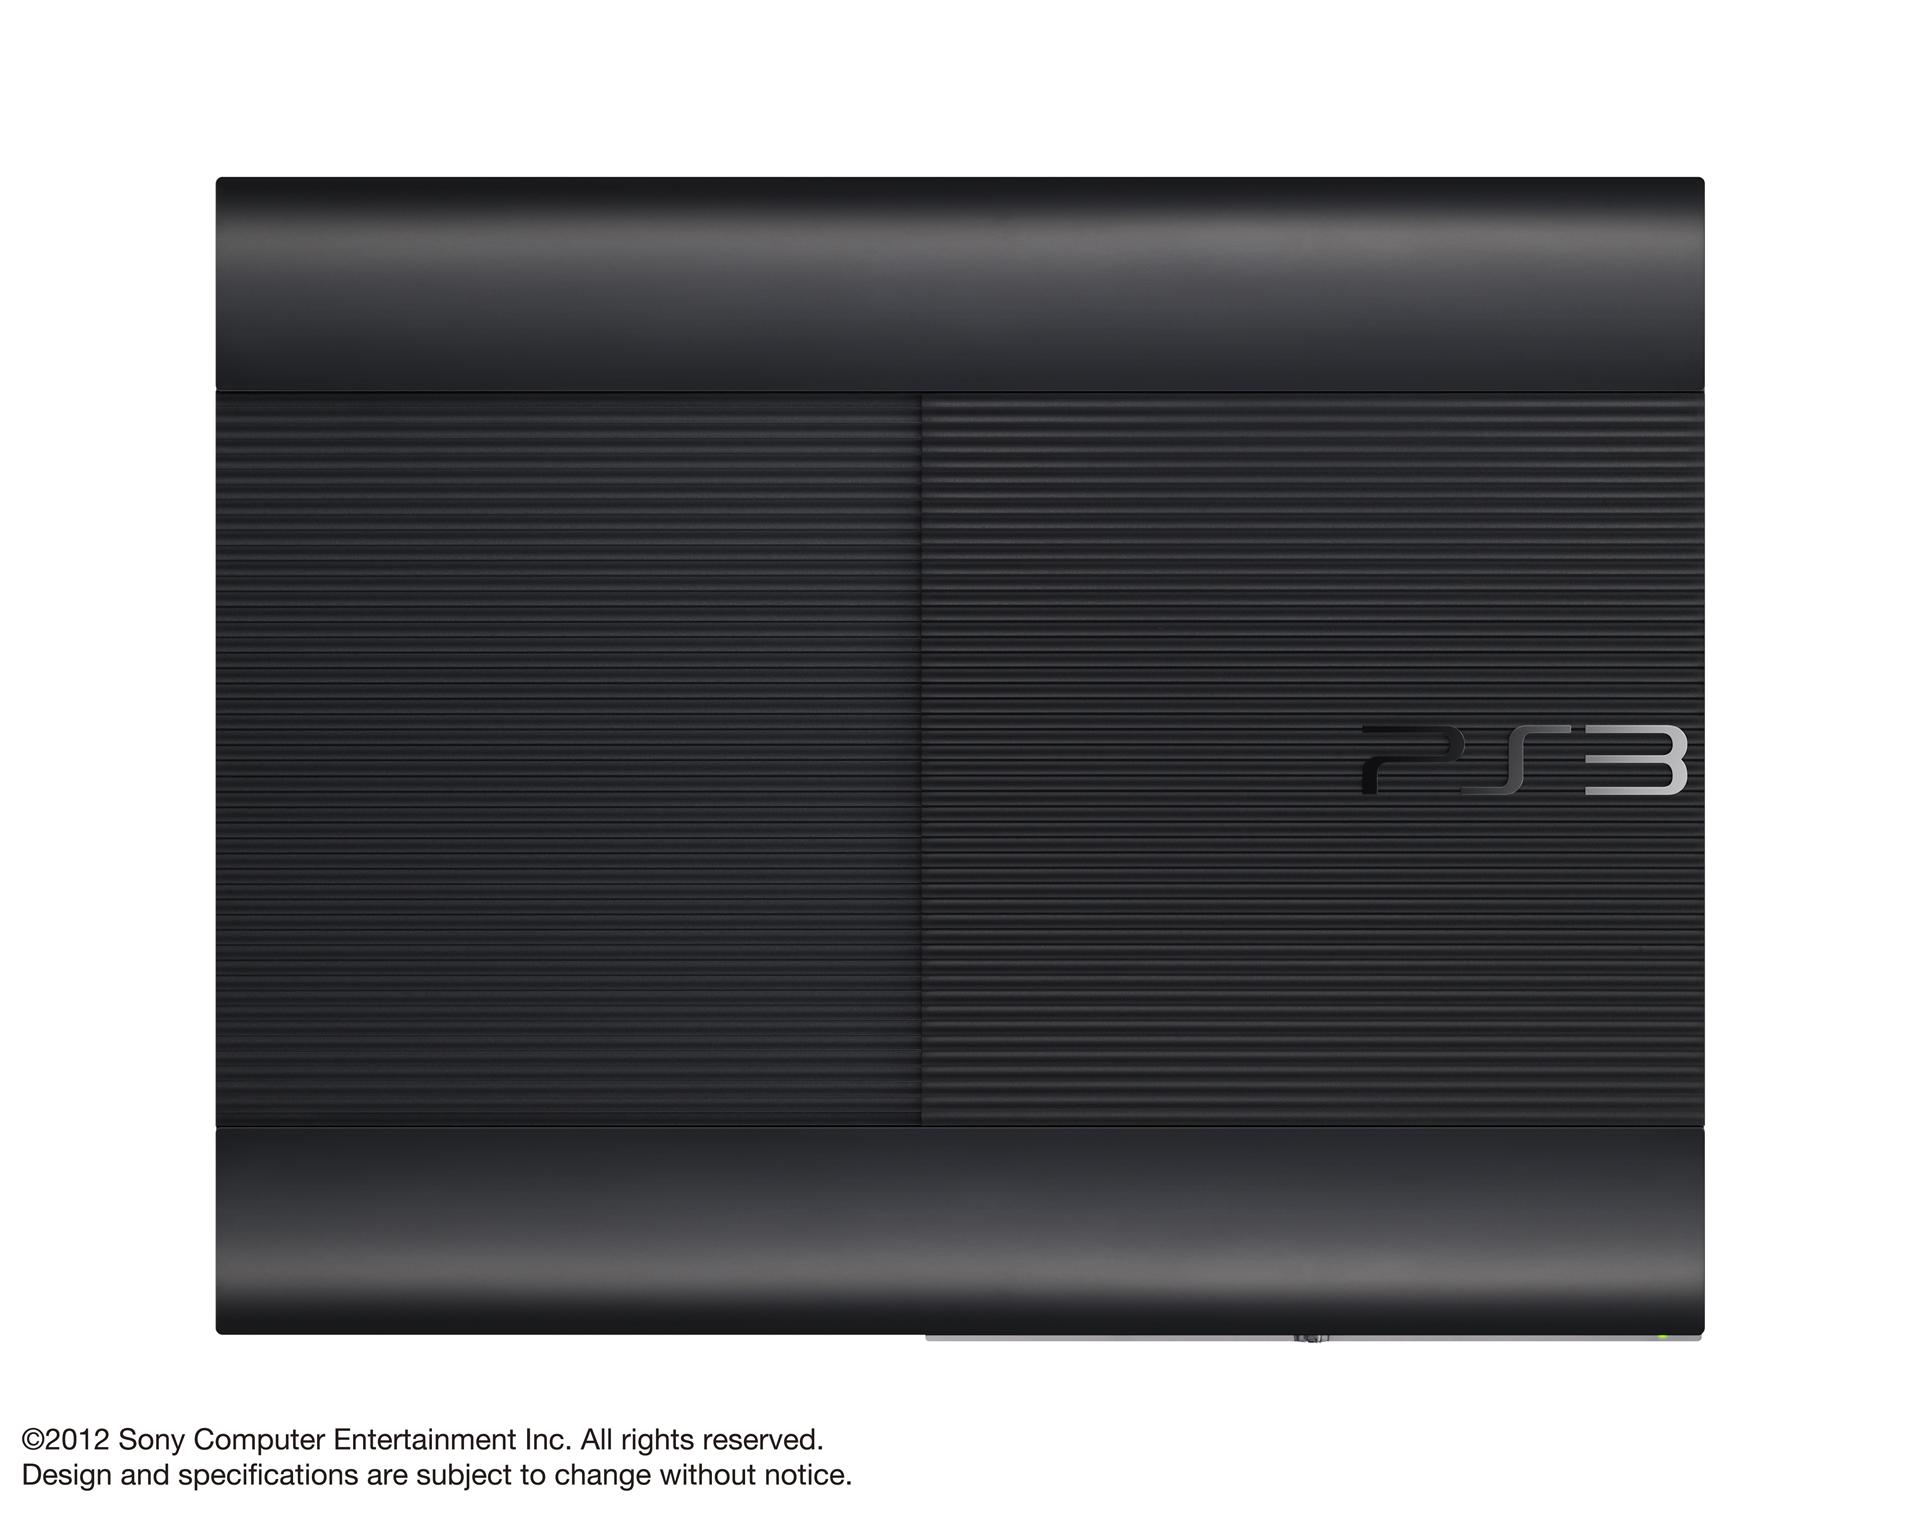 PS3 Super Slim Oben - Playstation Super Slim: Details zur externen Festplatte und offizielle Bilder der Konsole